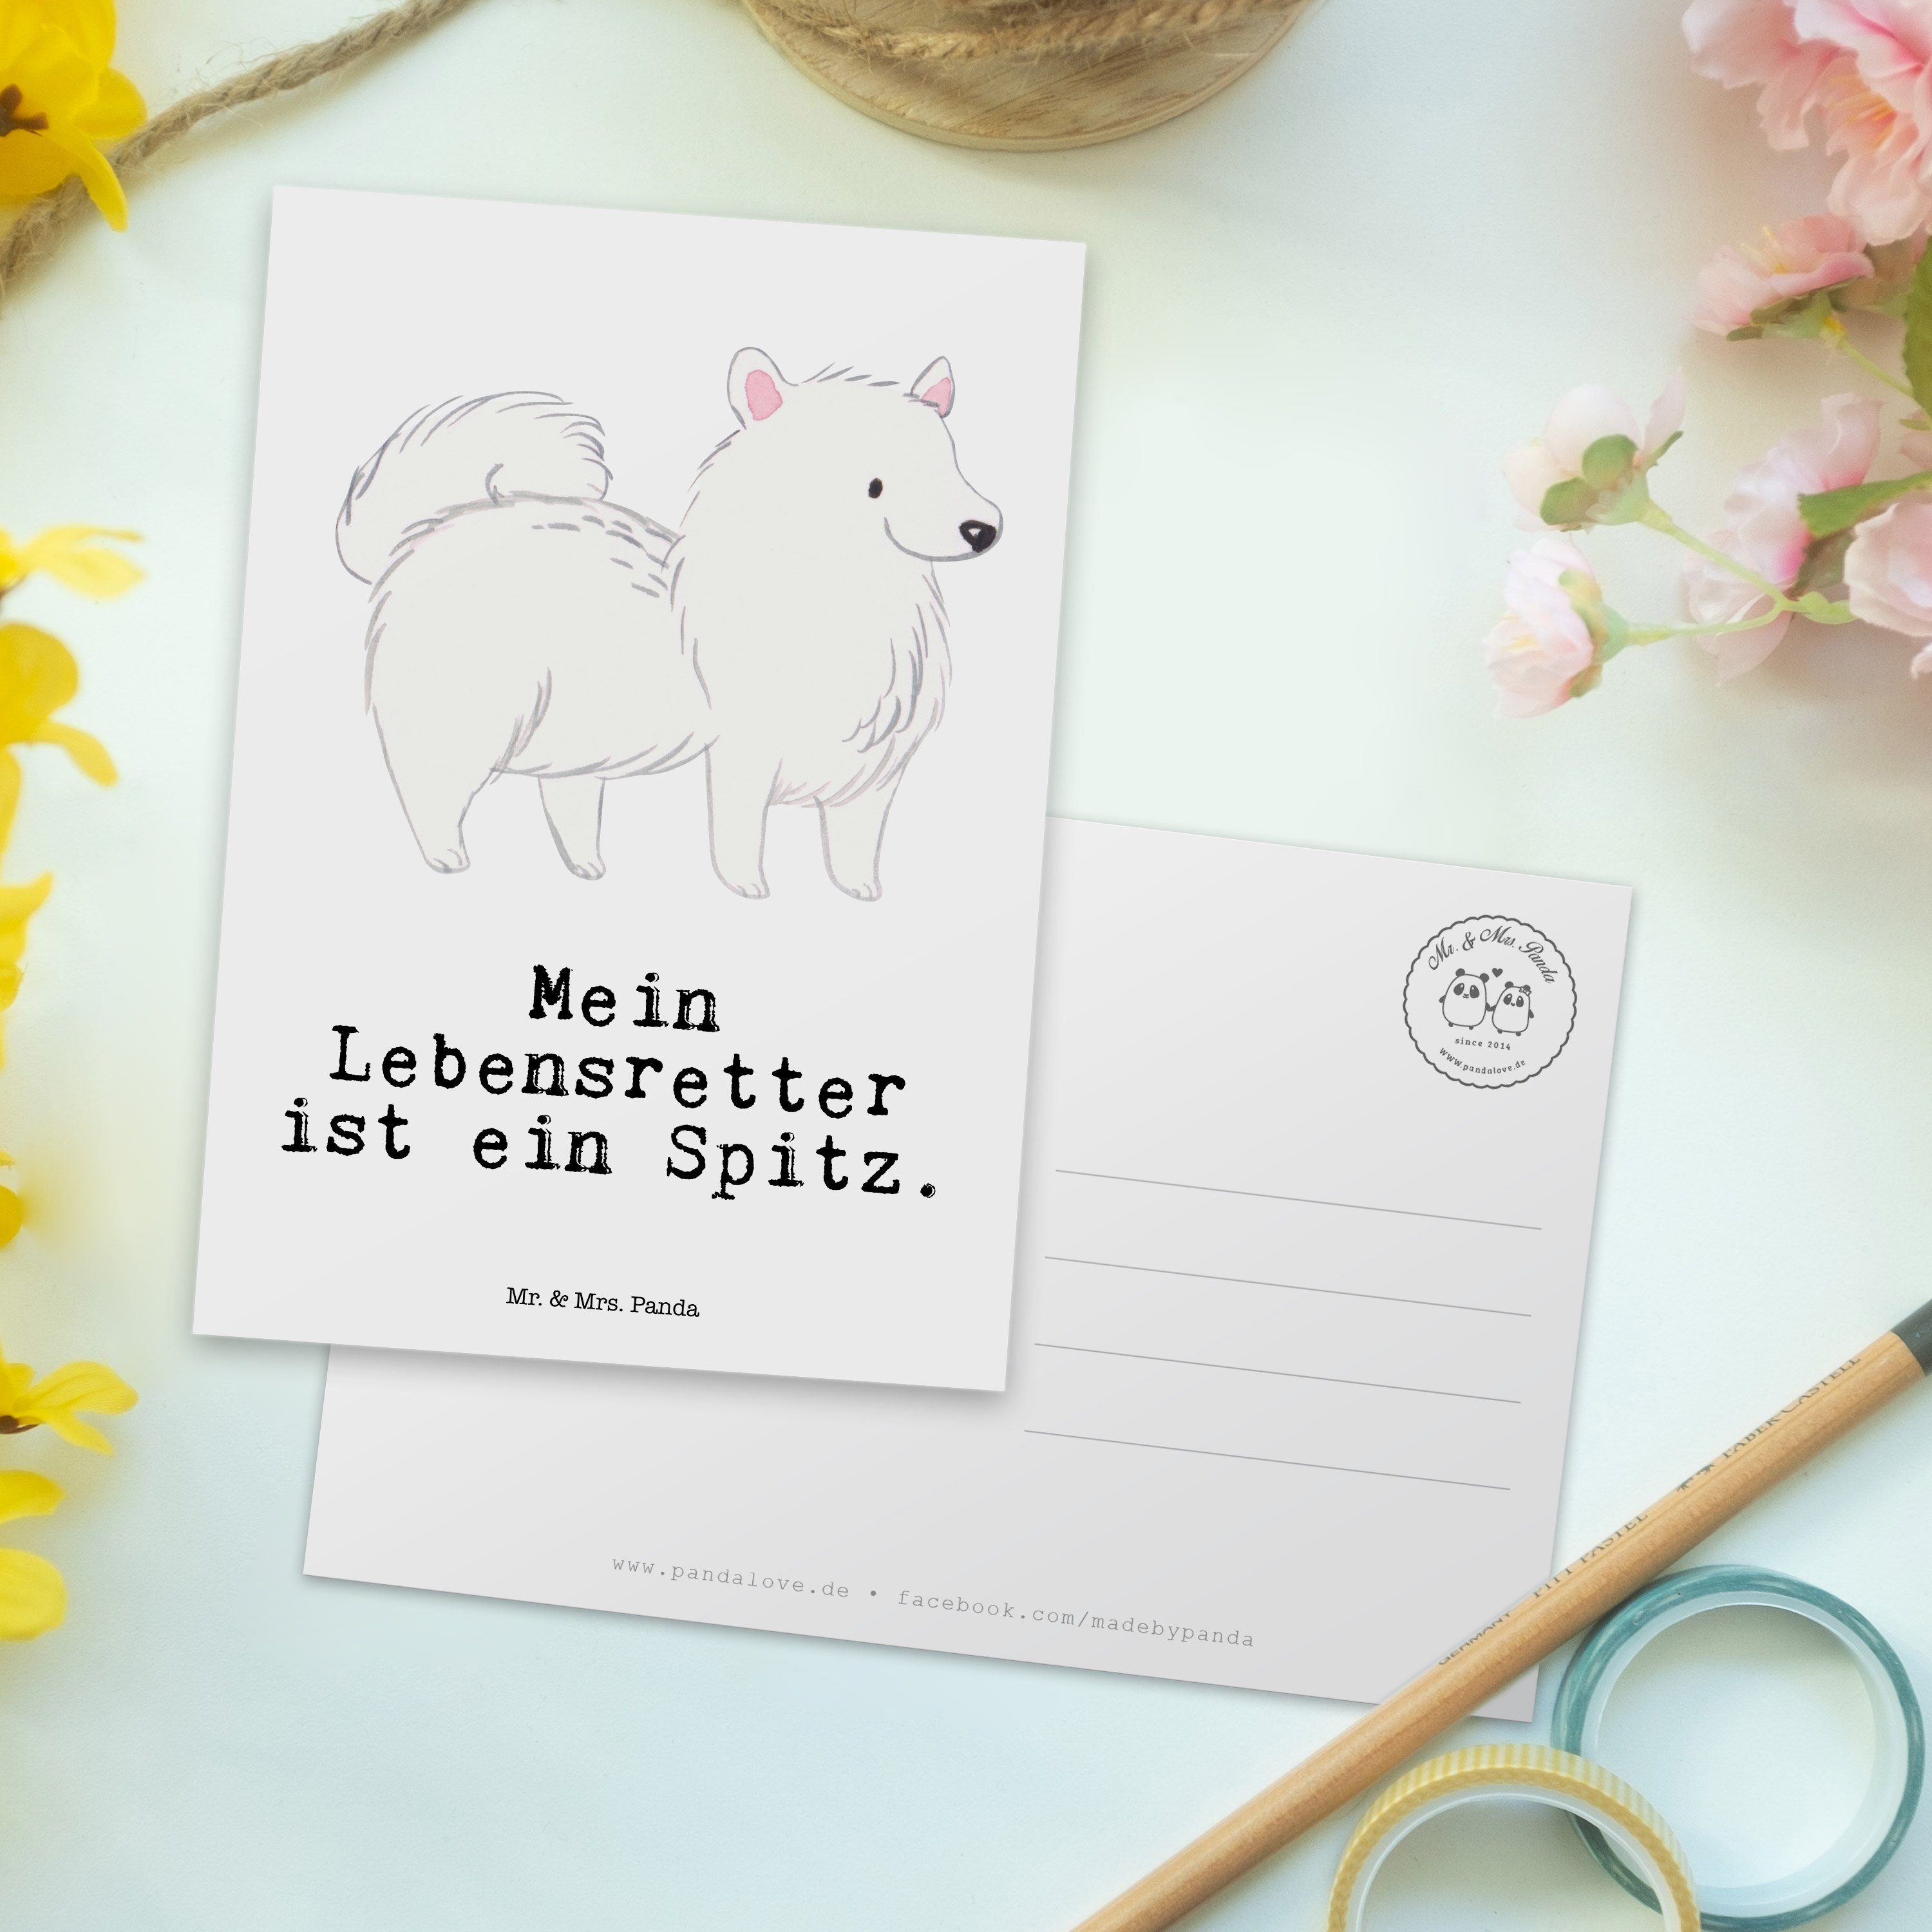 Rassehund Spitz Weiß - Tierfreund, & - Lebensretter Schenken, Mrs. Panda Geschenk, Mr. Postkarte